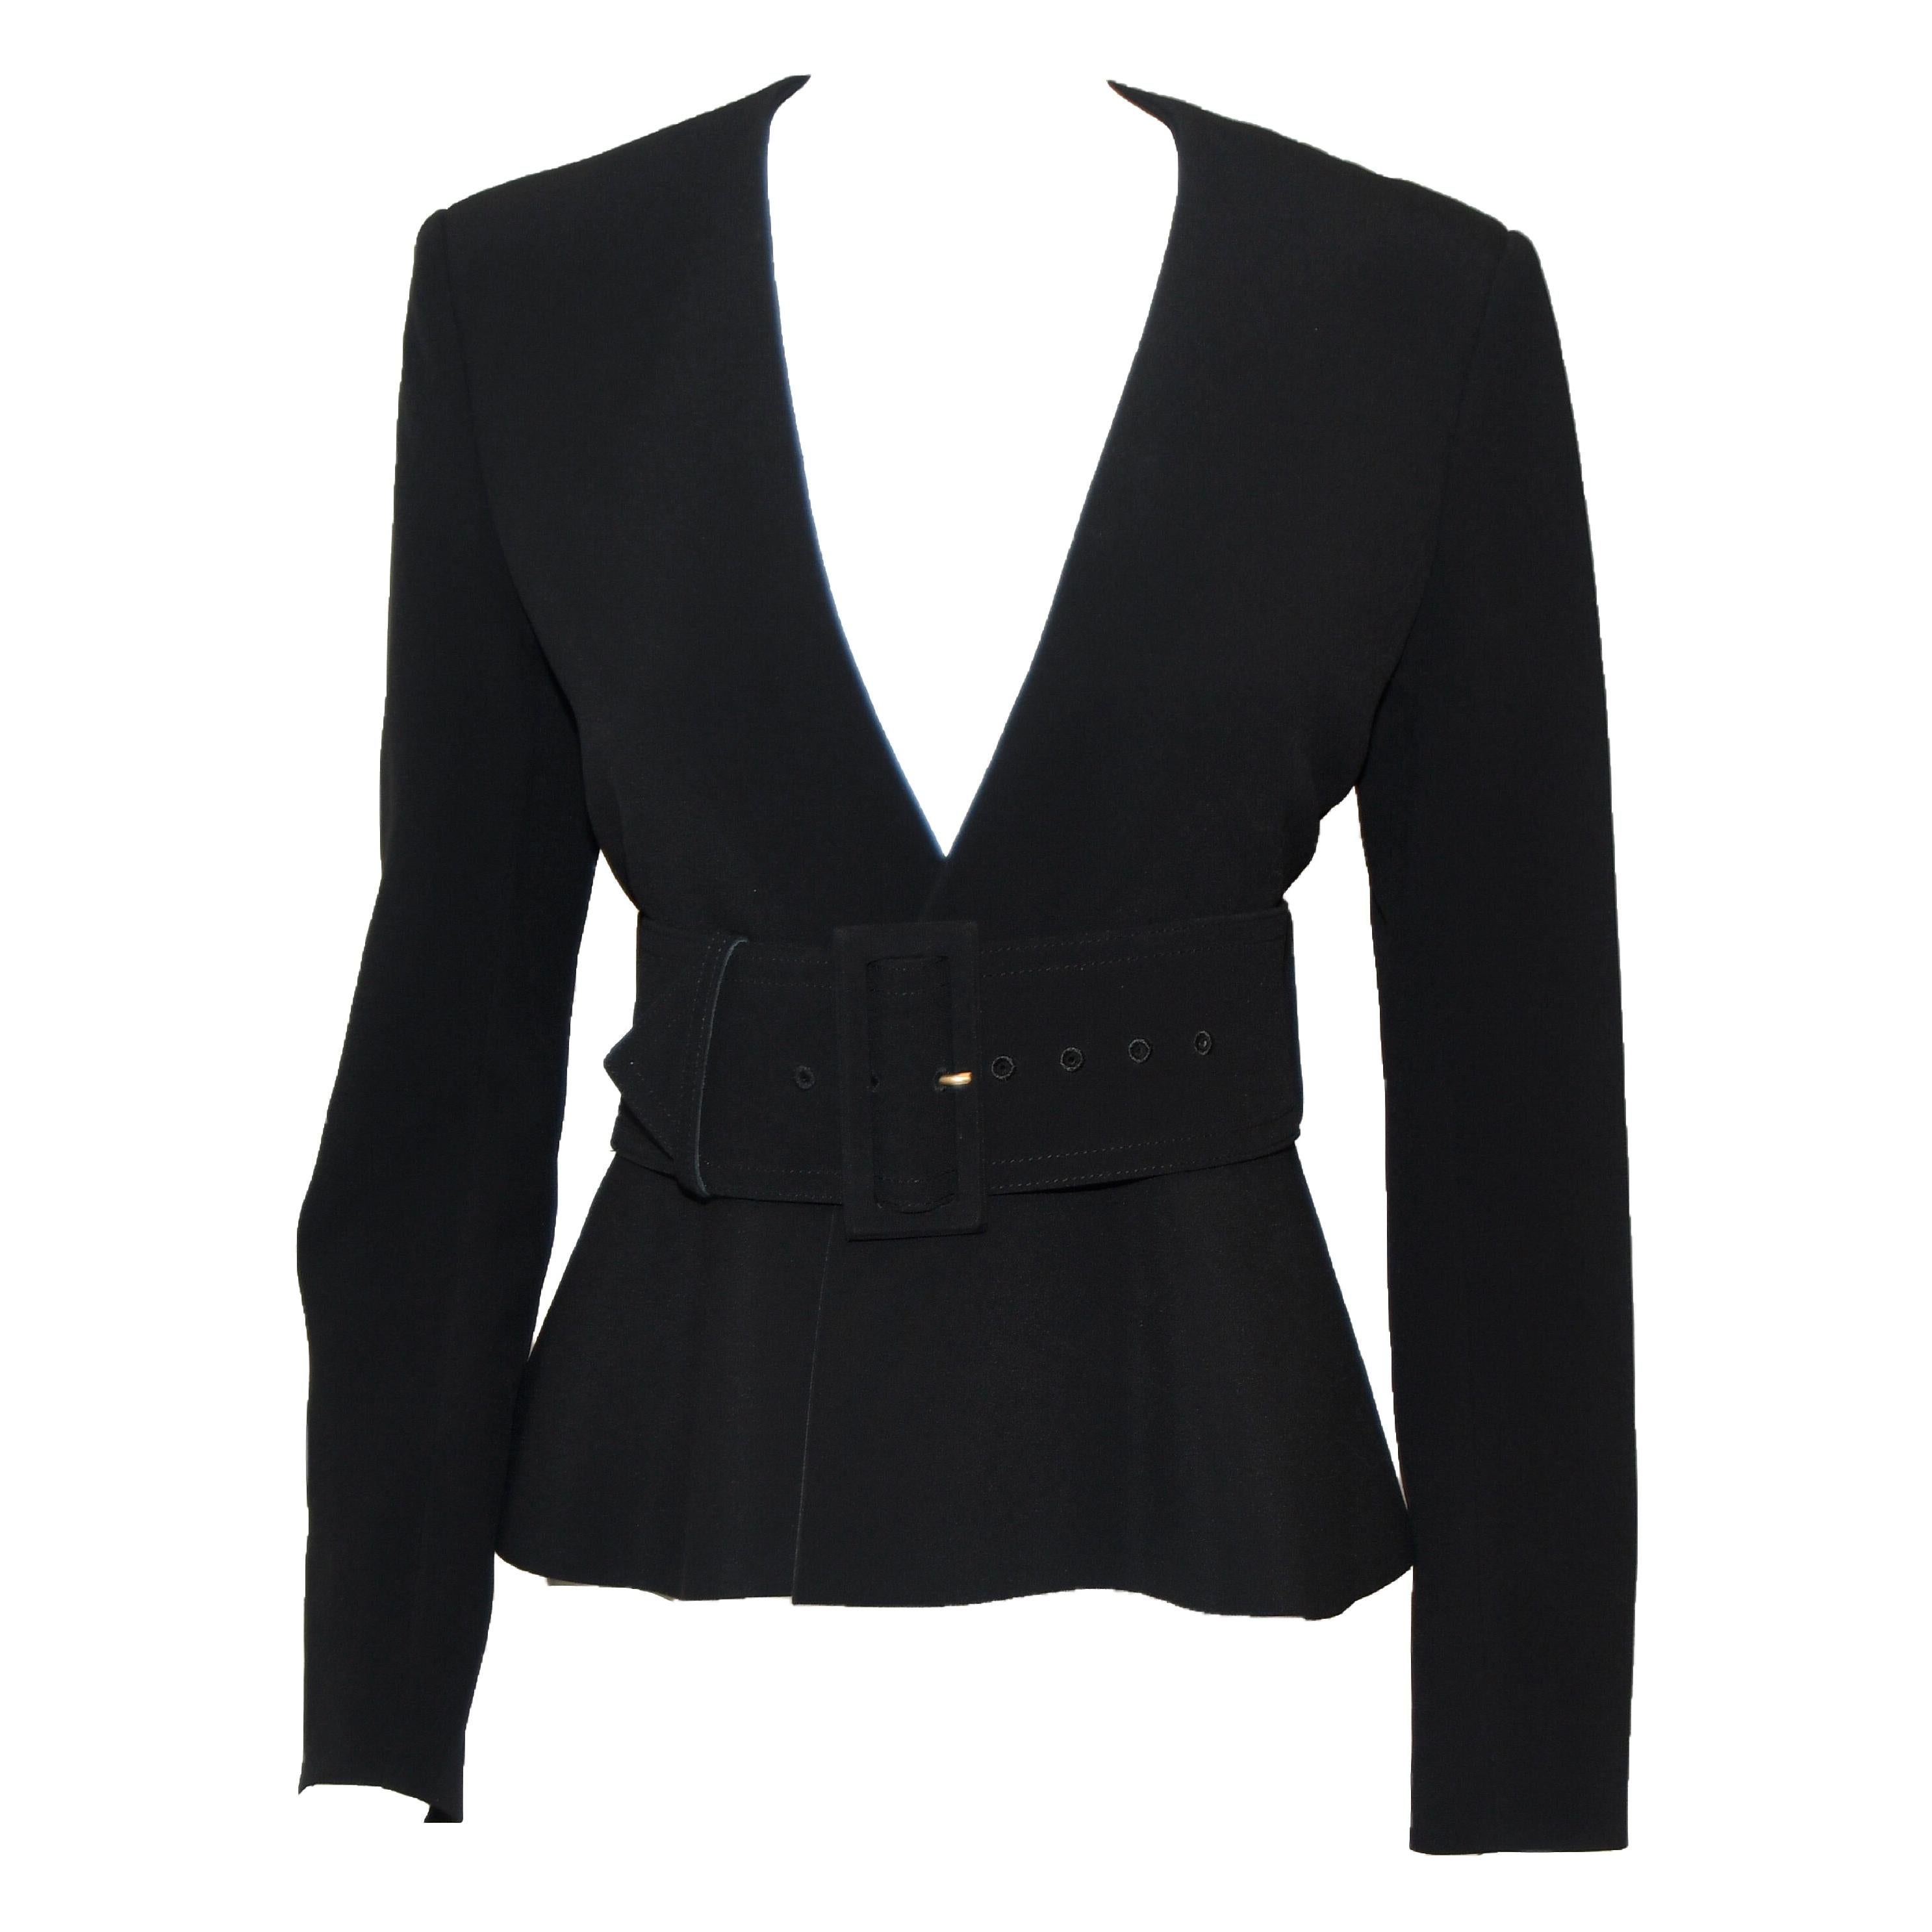 Celine Black V Neck Belted Jacket With Peplum 2012 Spring Paris Collection 40 EU For Sale